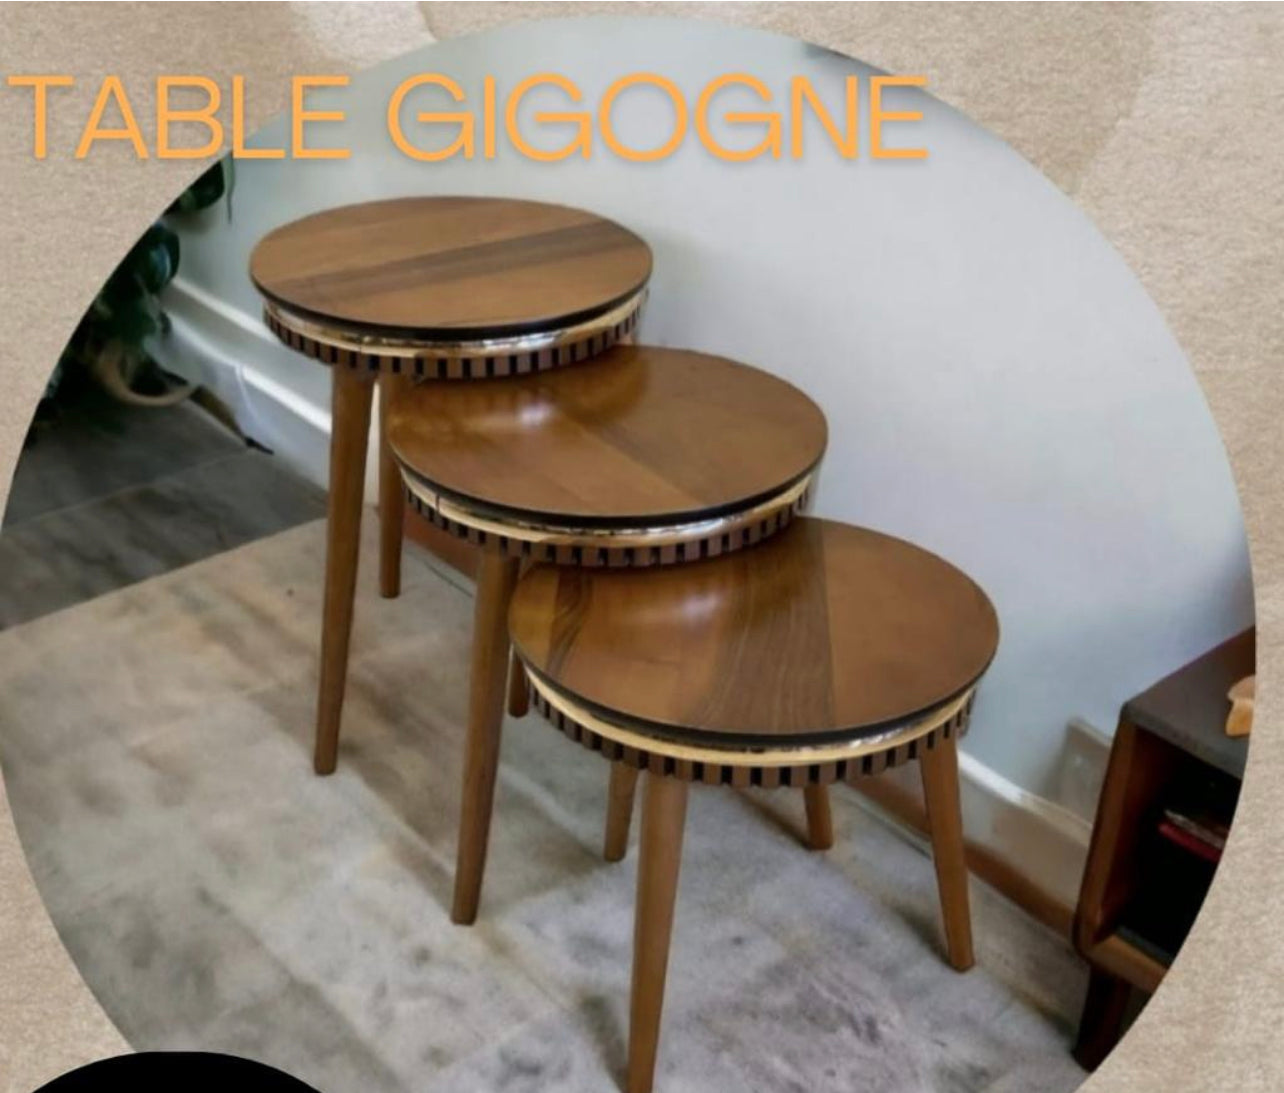 Table Gigogne 3 pièces en bois